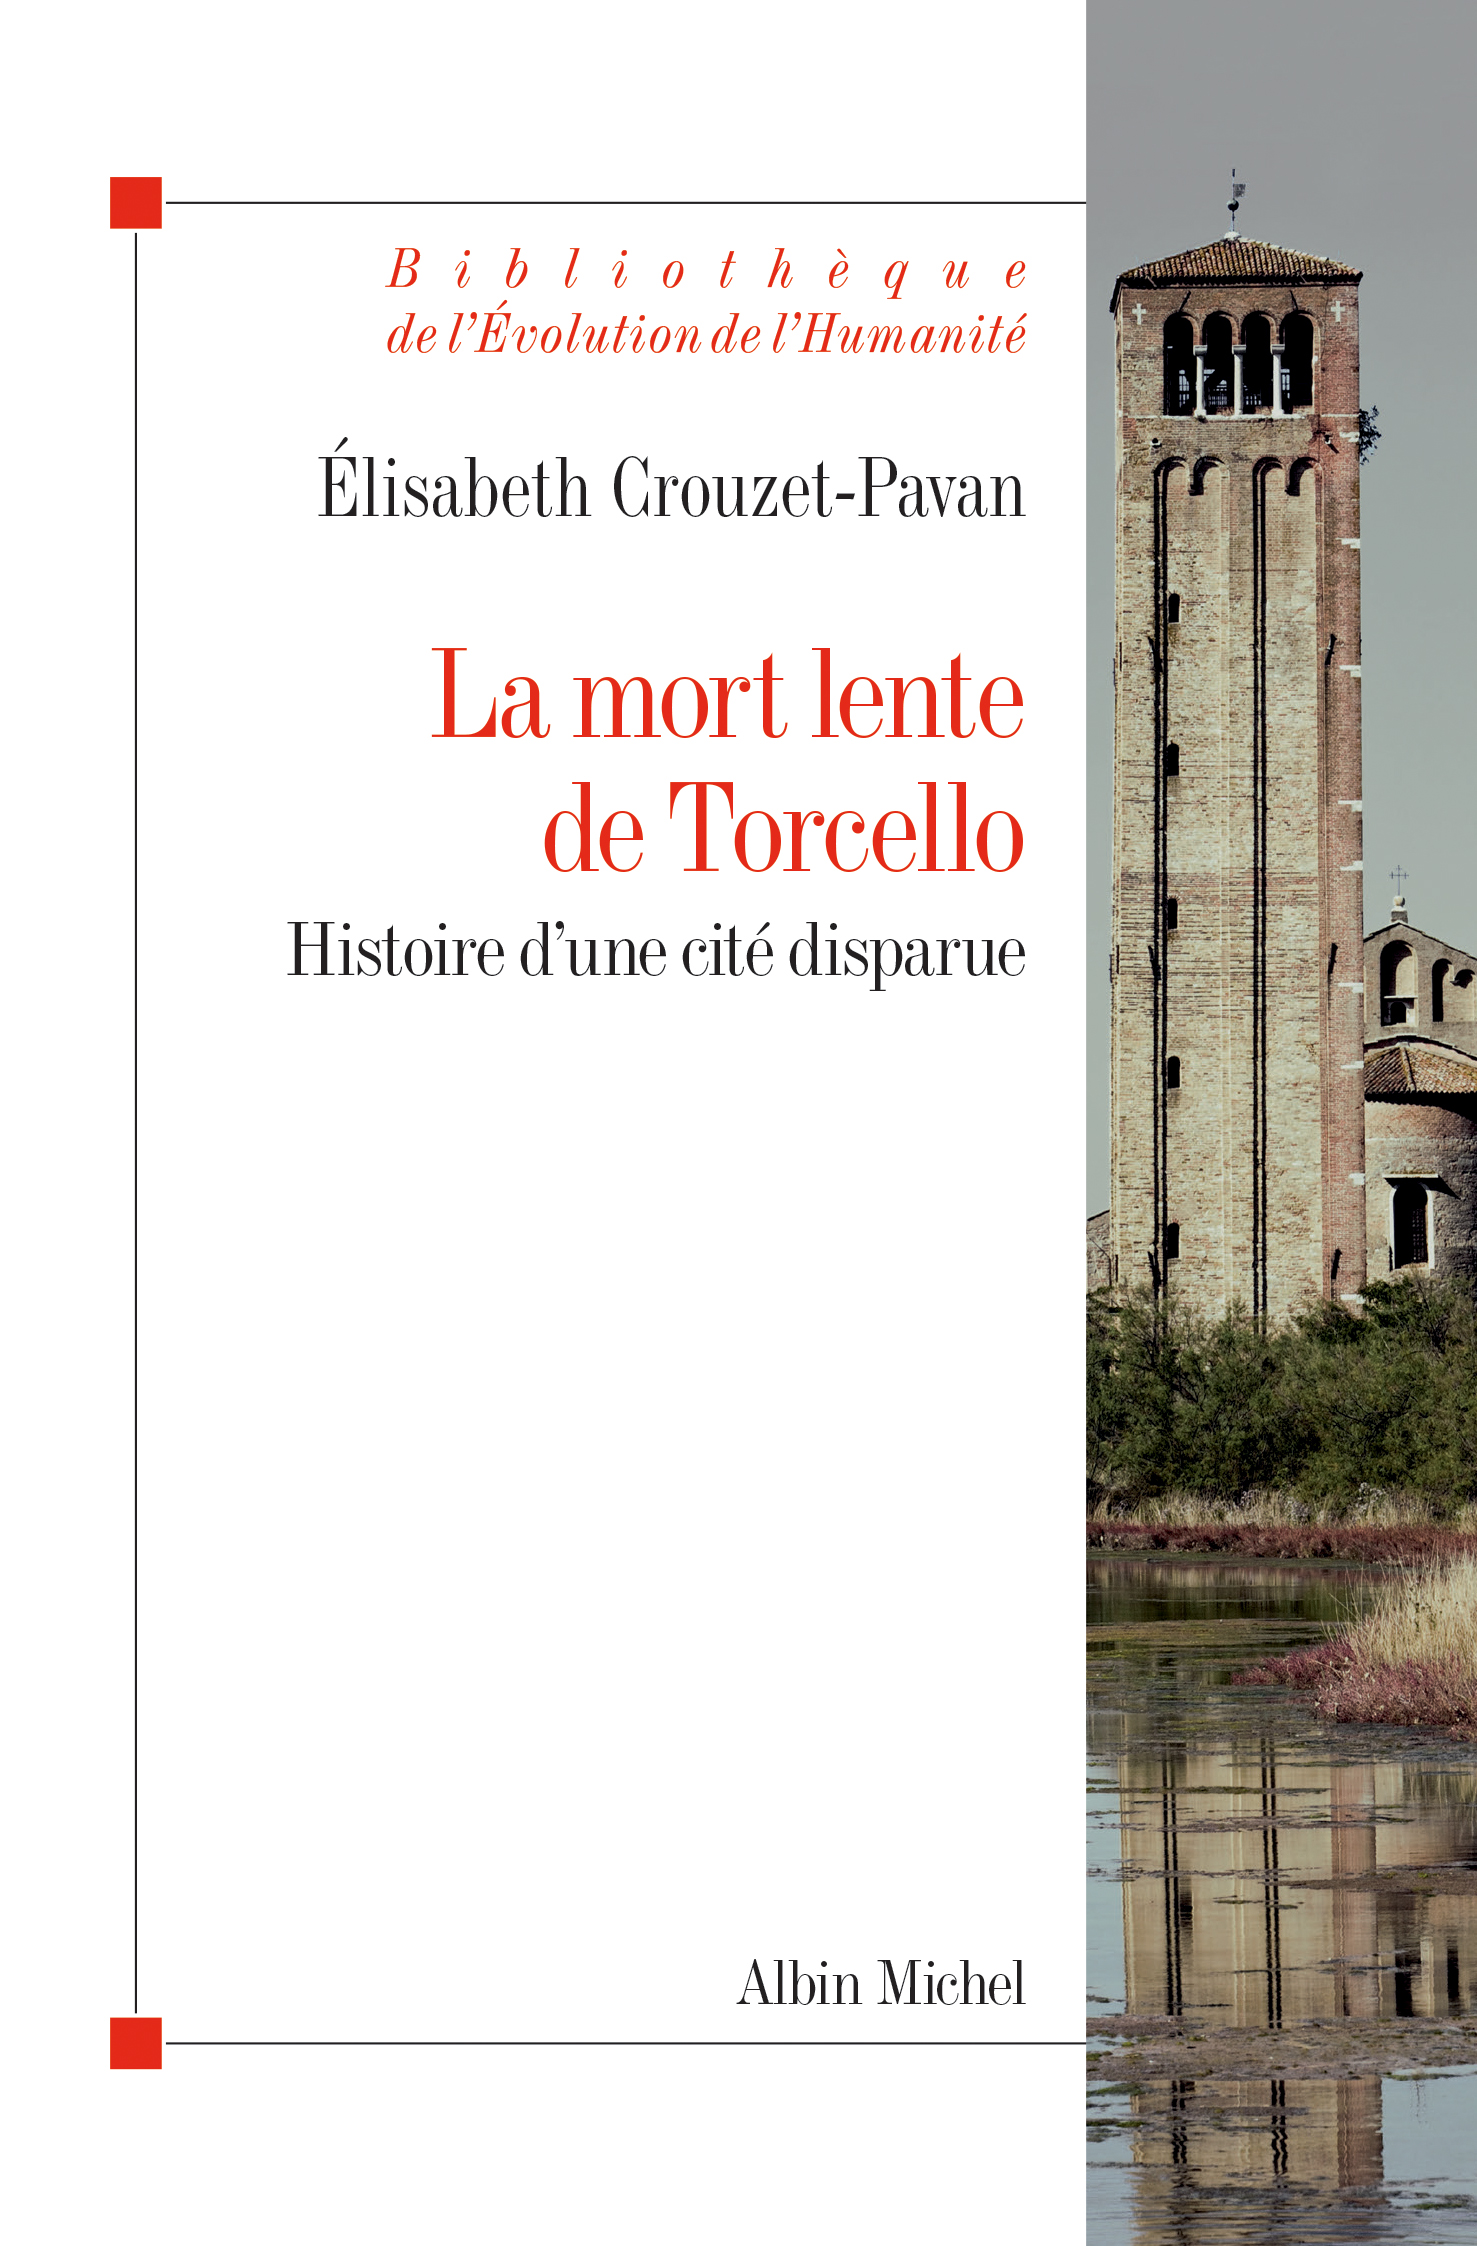 Couverture du livre La Mort lente de Torcello